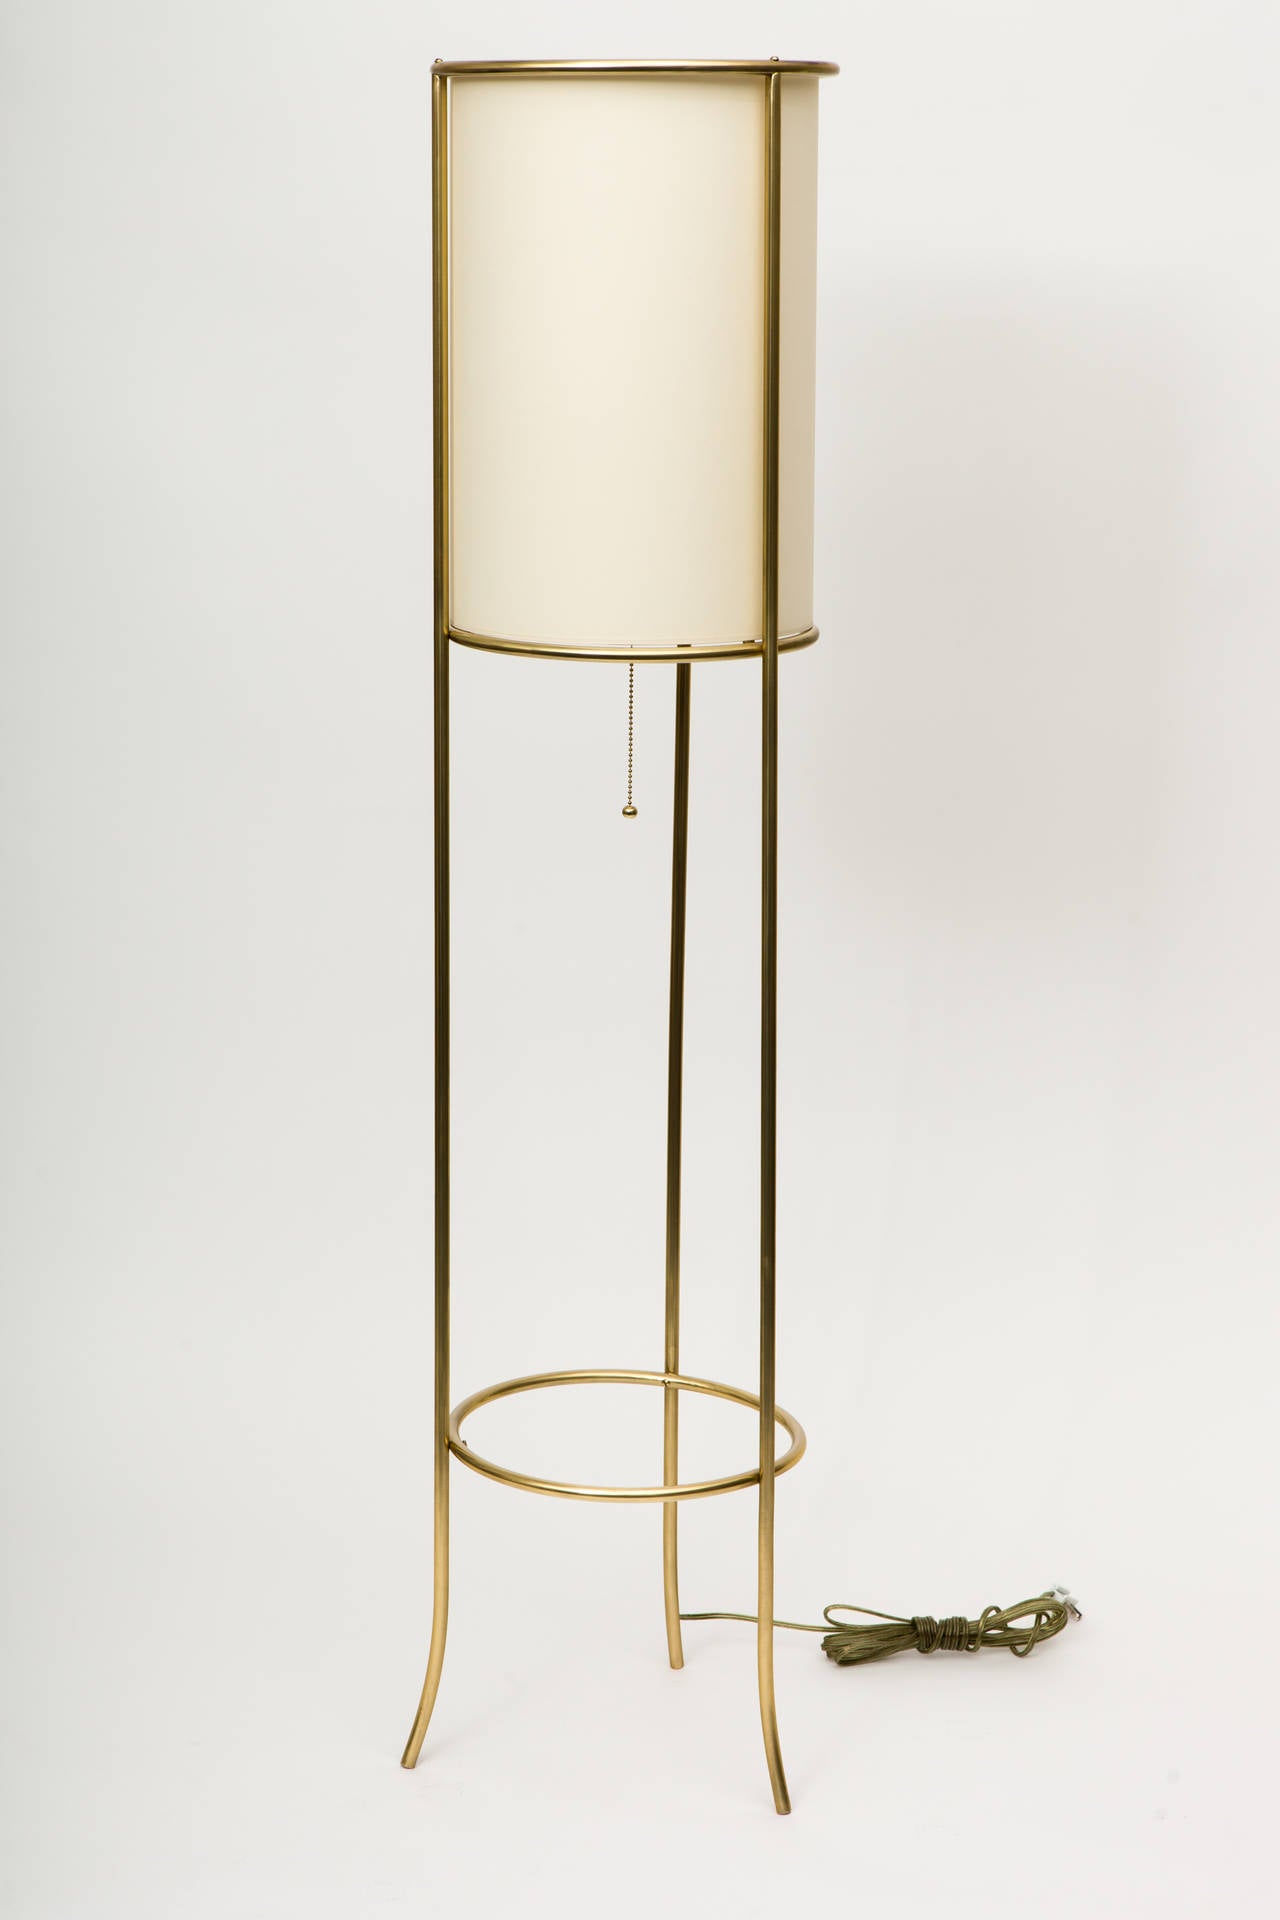 Pair of Tripod Brass Floor Lamps in the Manner of T.H. Robsjohn-Gibbings 1